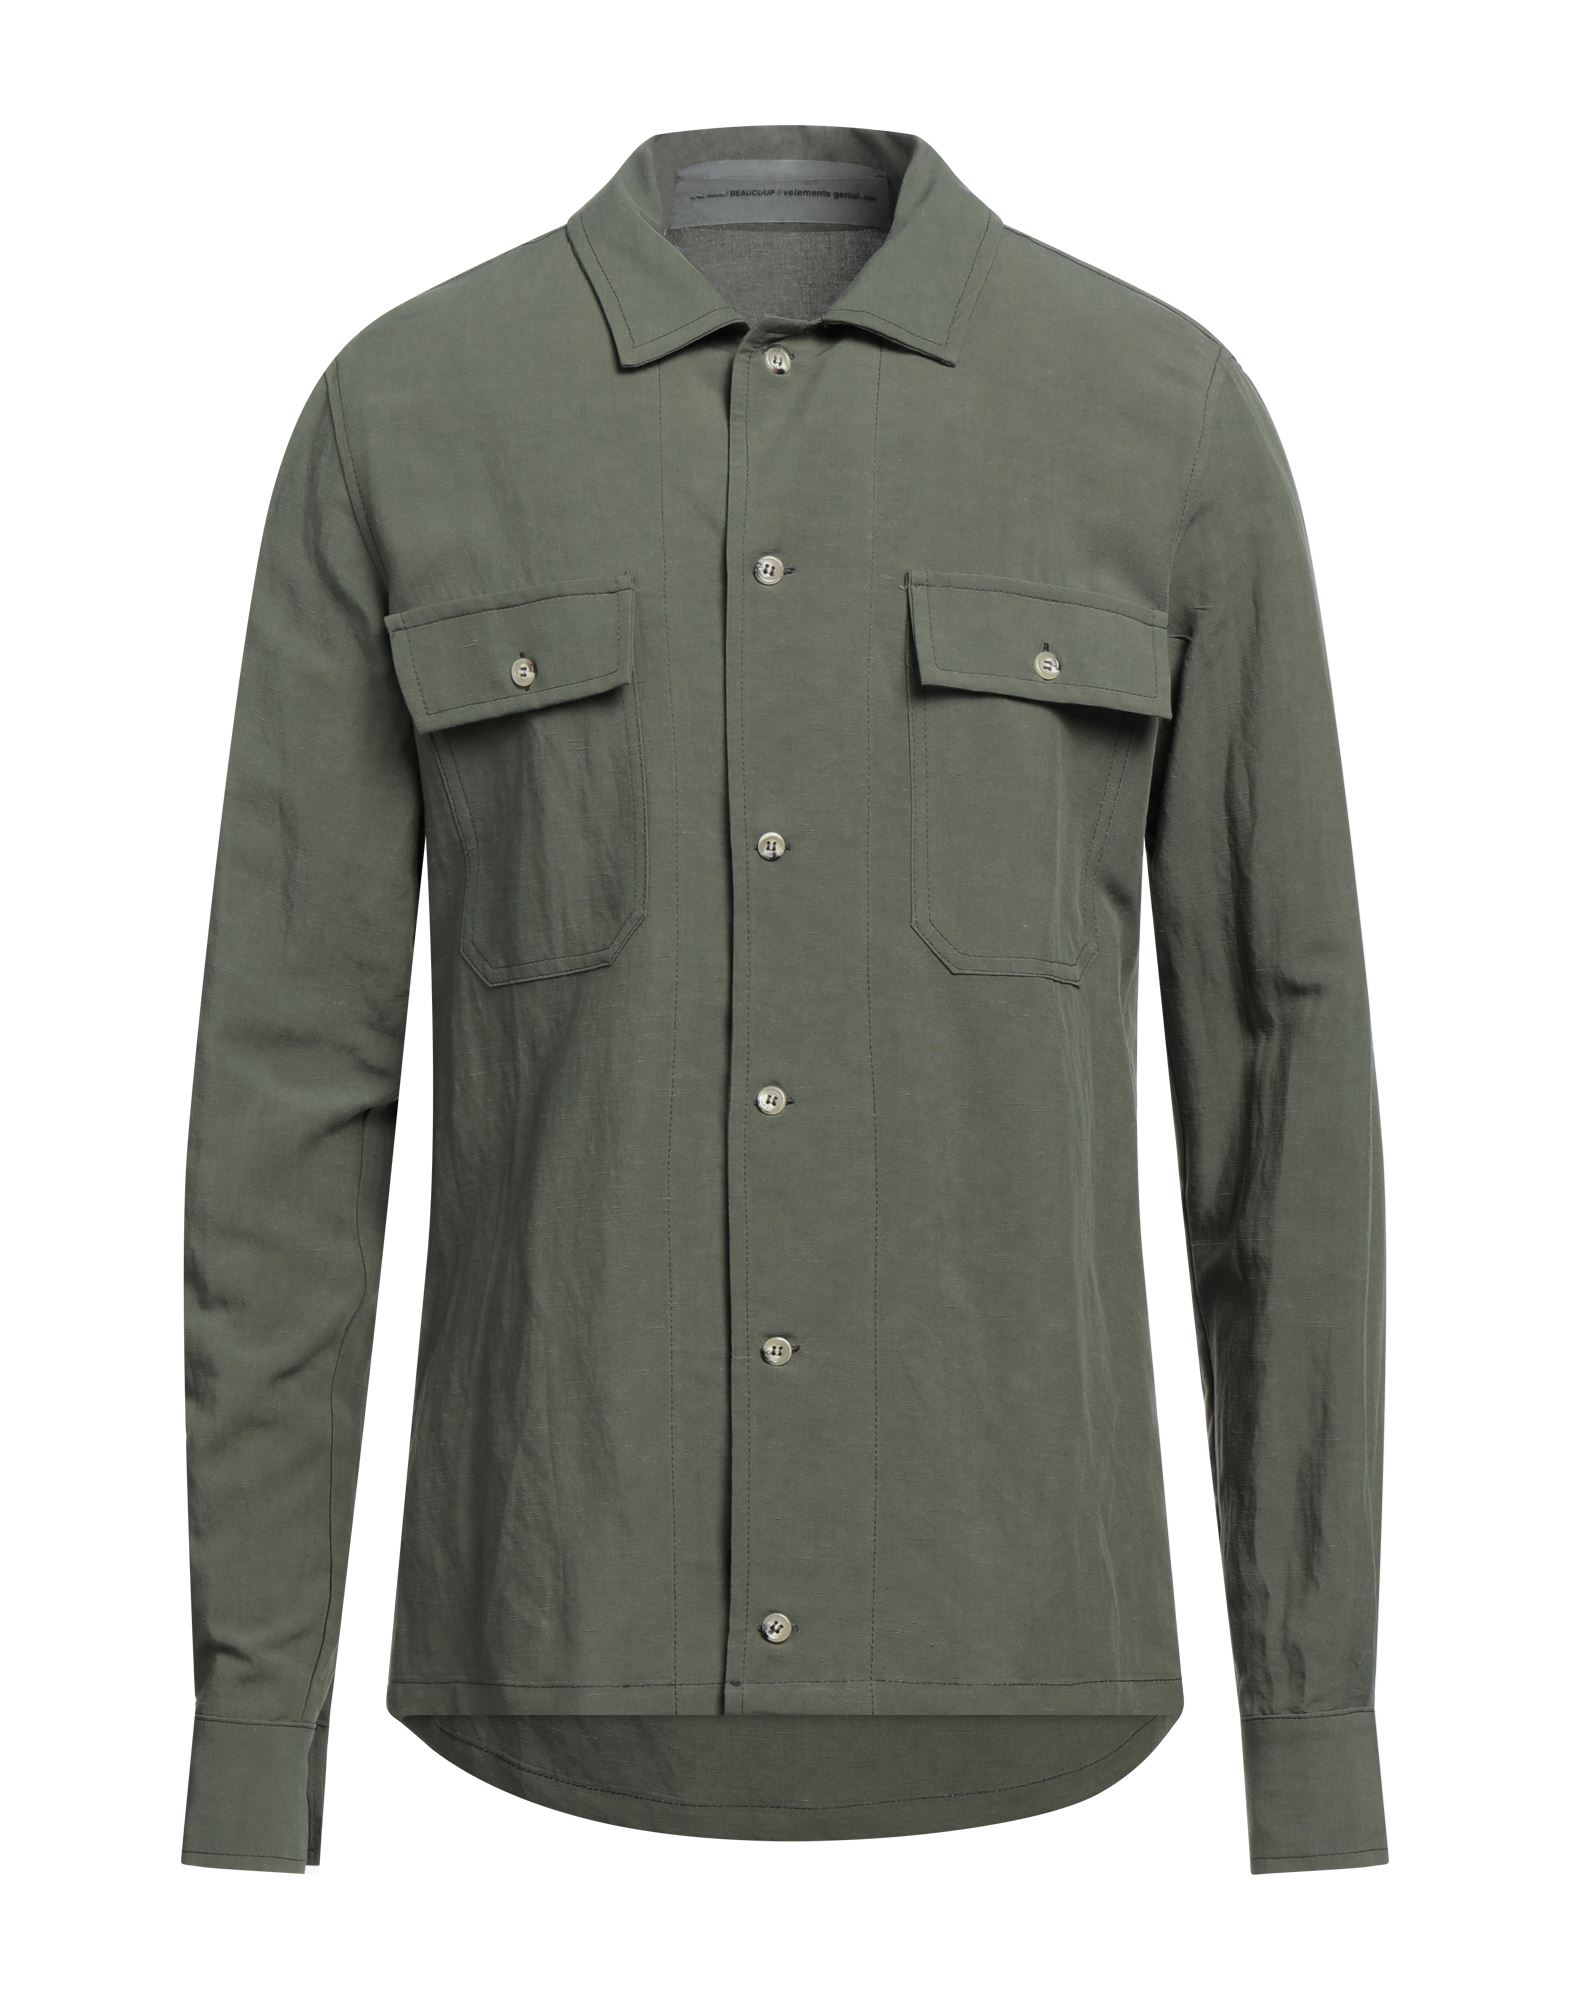 Beaucoup .., Man Shirt Military Green Size M Viscose, Linen